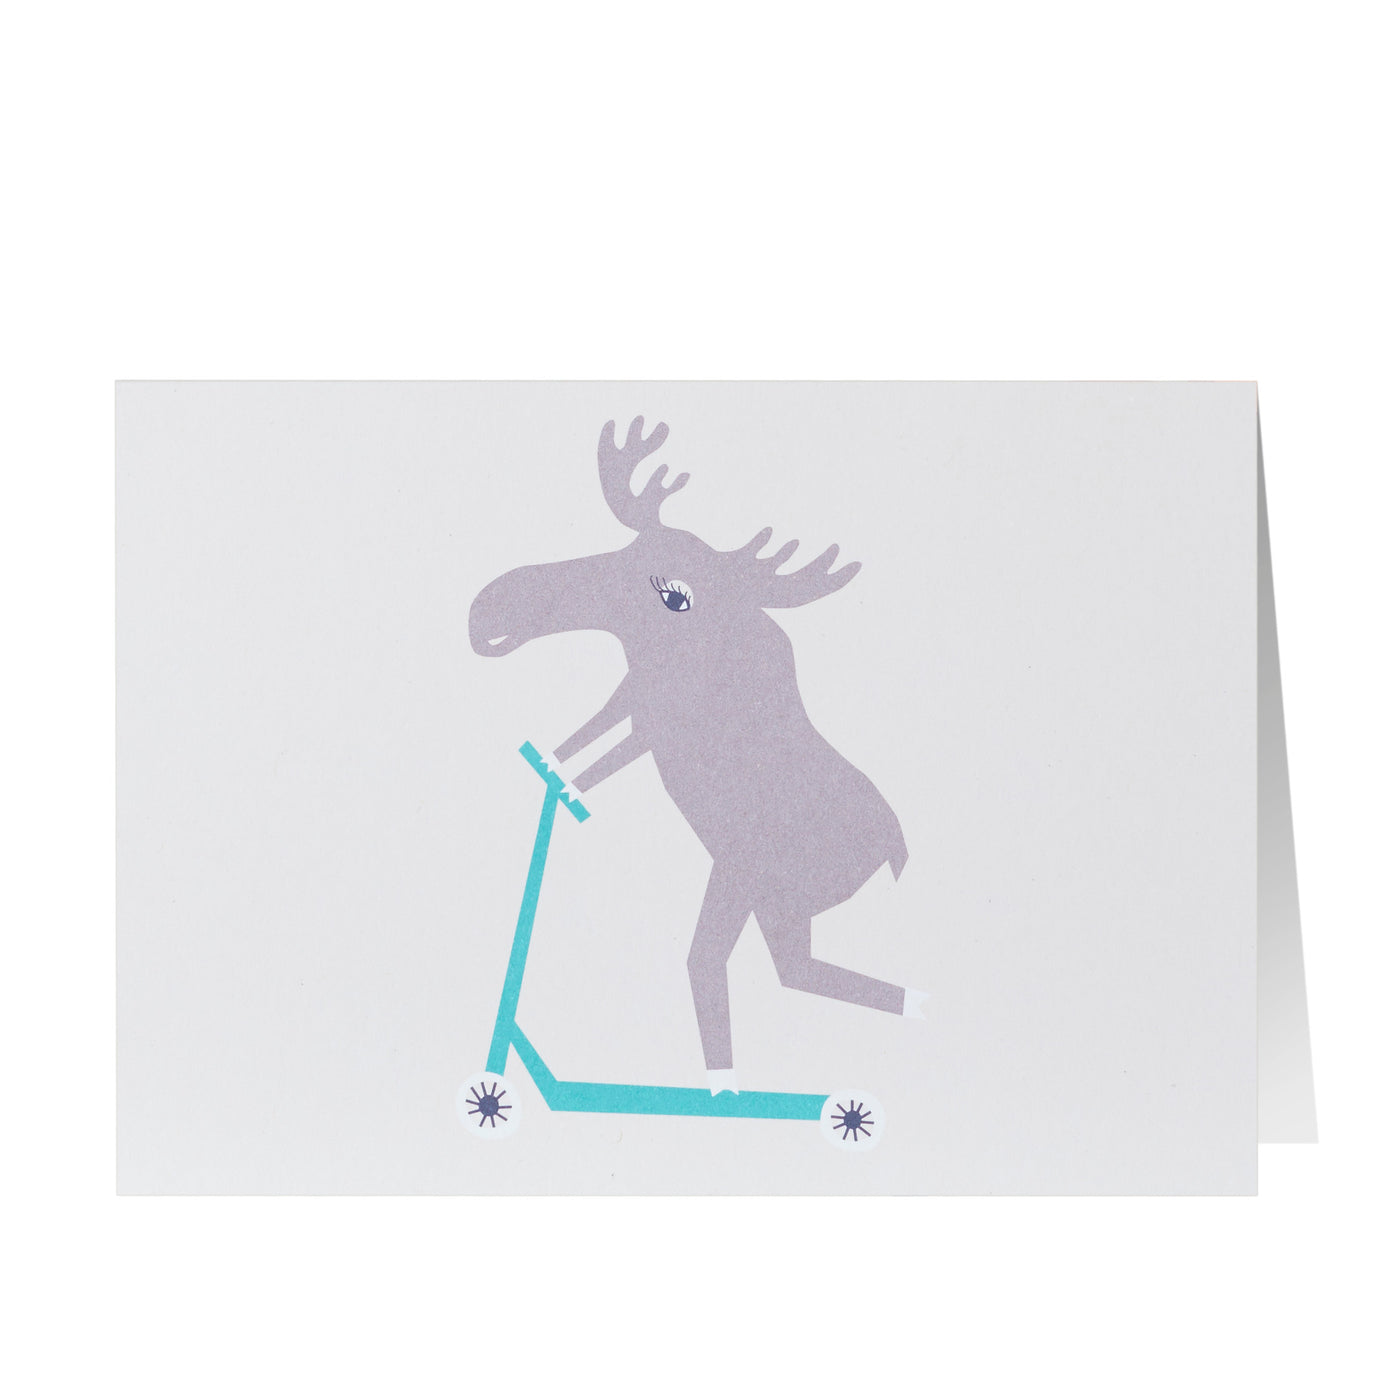 賀卡 - 騎滑板車的駝鹿